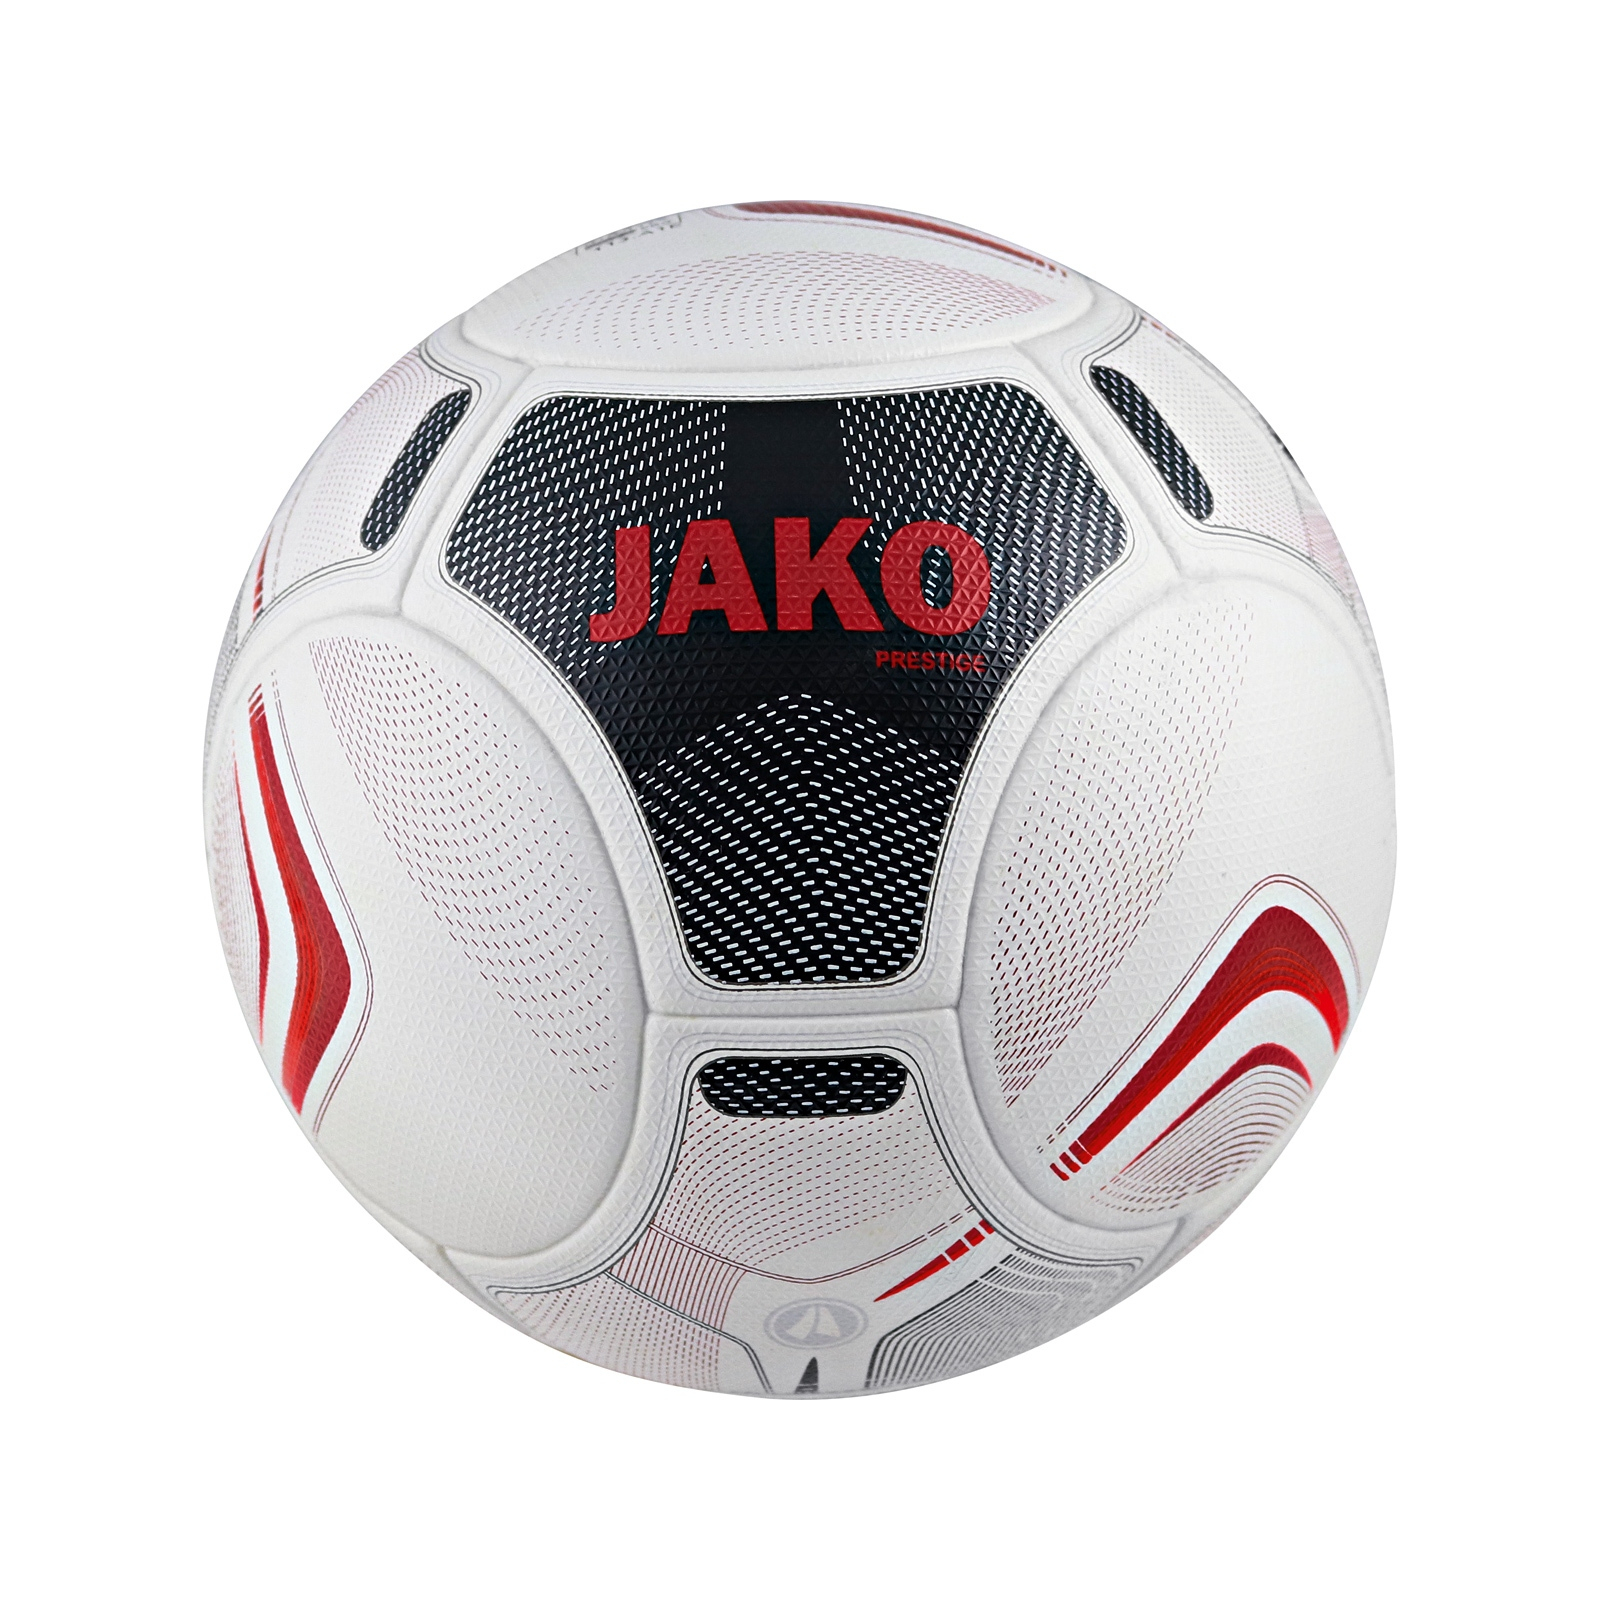 Мяч футбольный Jako Fifa Prestige Qulity Pro 2344-00 білий, чорний, бордовий Уні 5 (4059562239560)